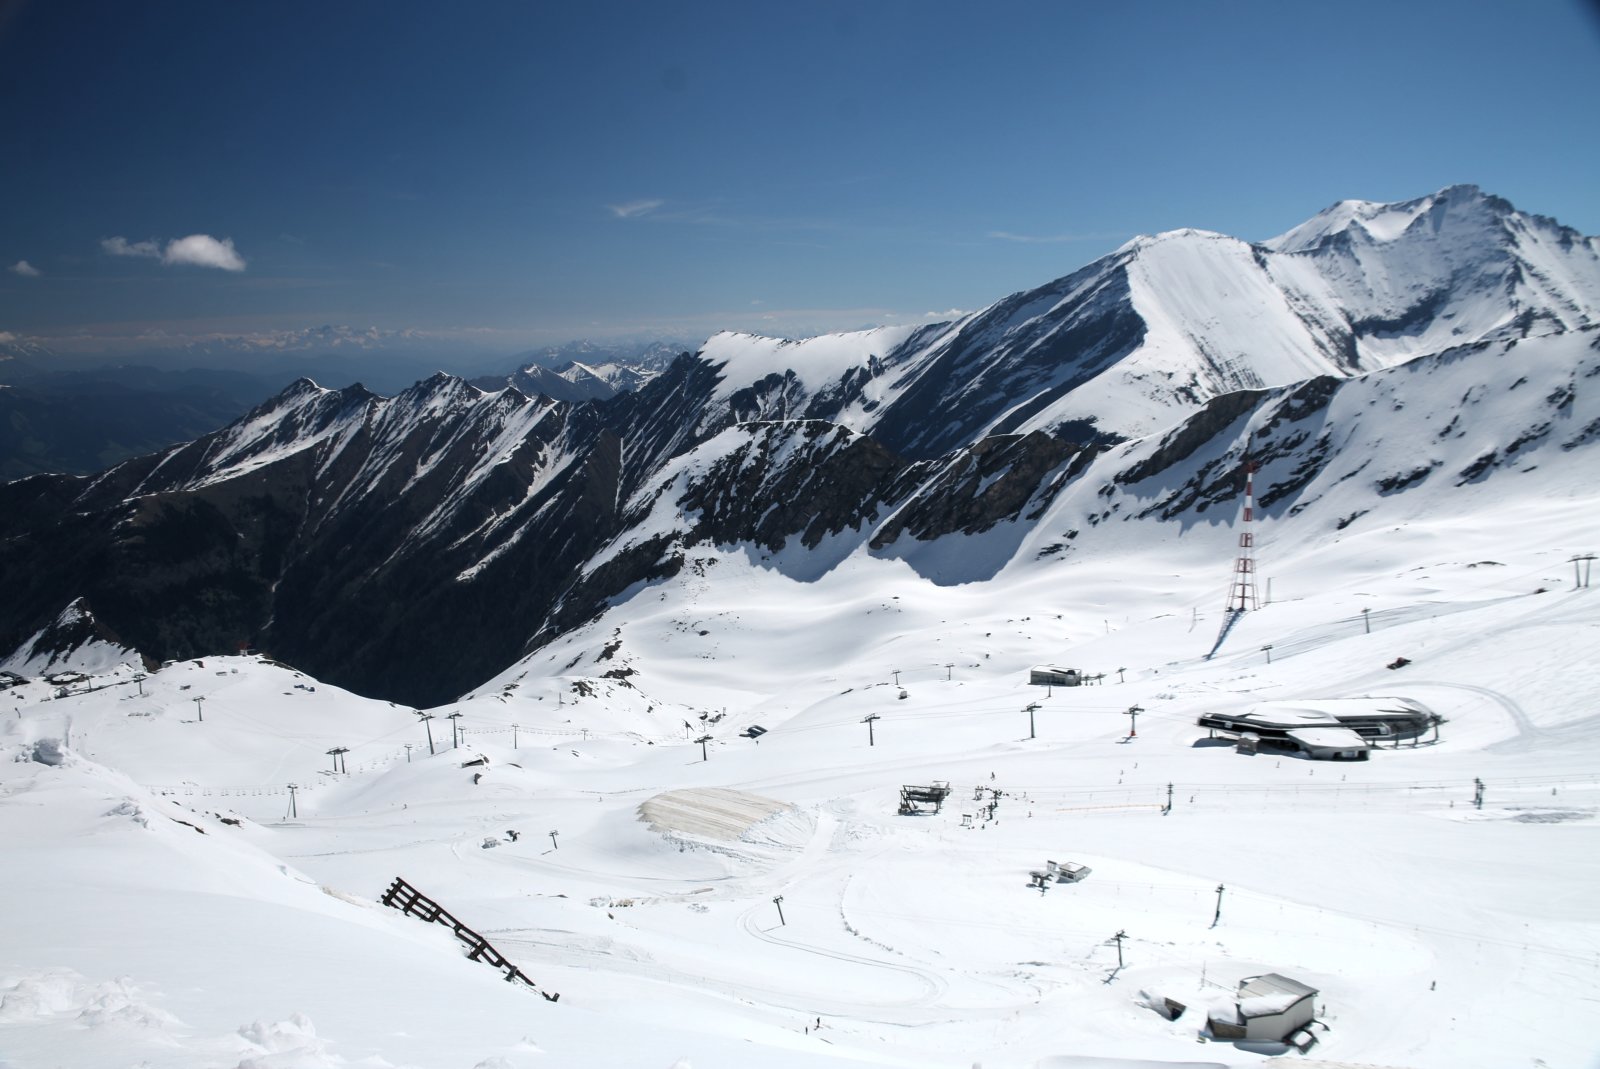 Kilátás észak fele, többek közt az Alpincenterhez vezető pályákkal